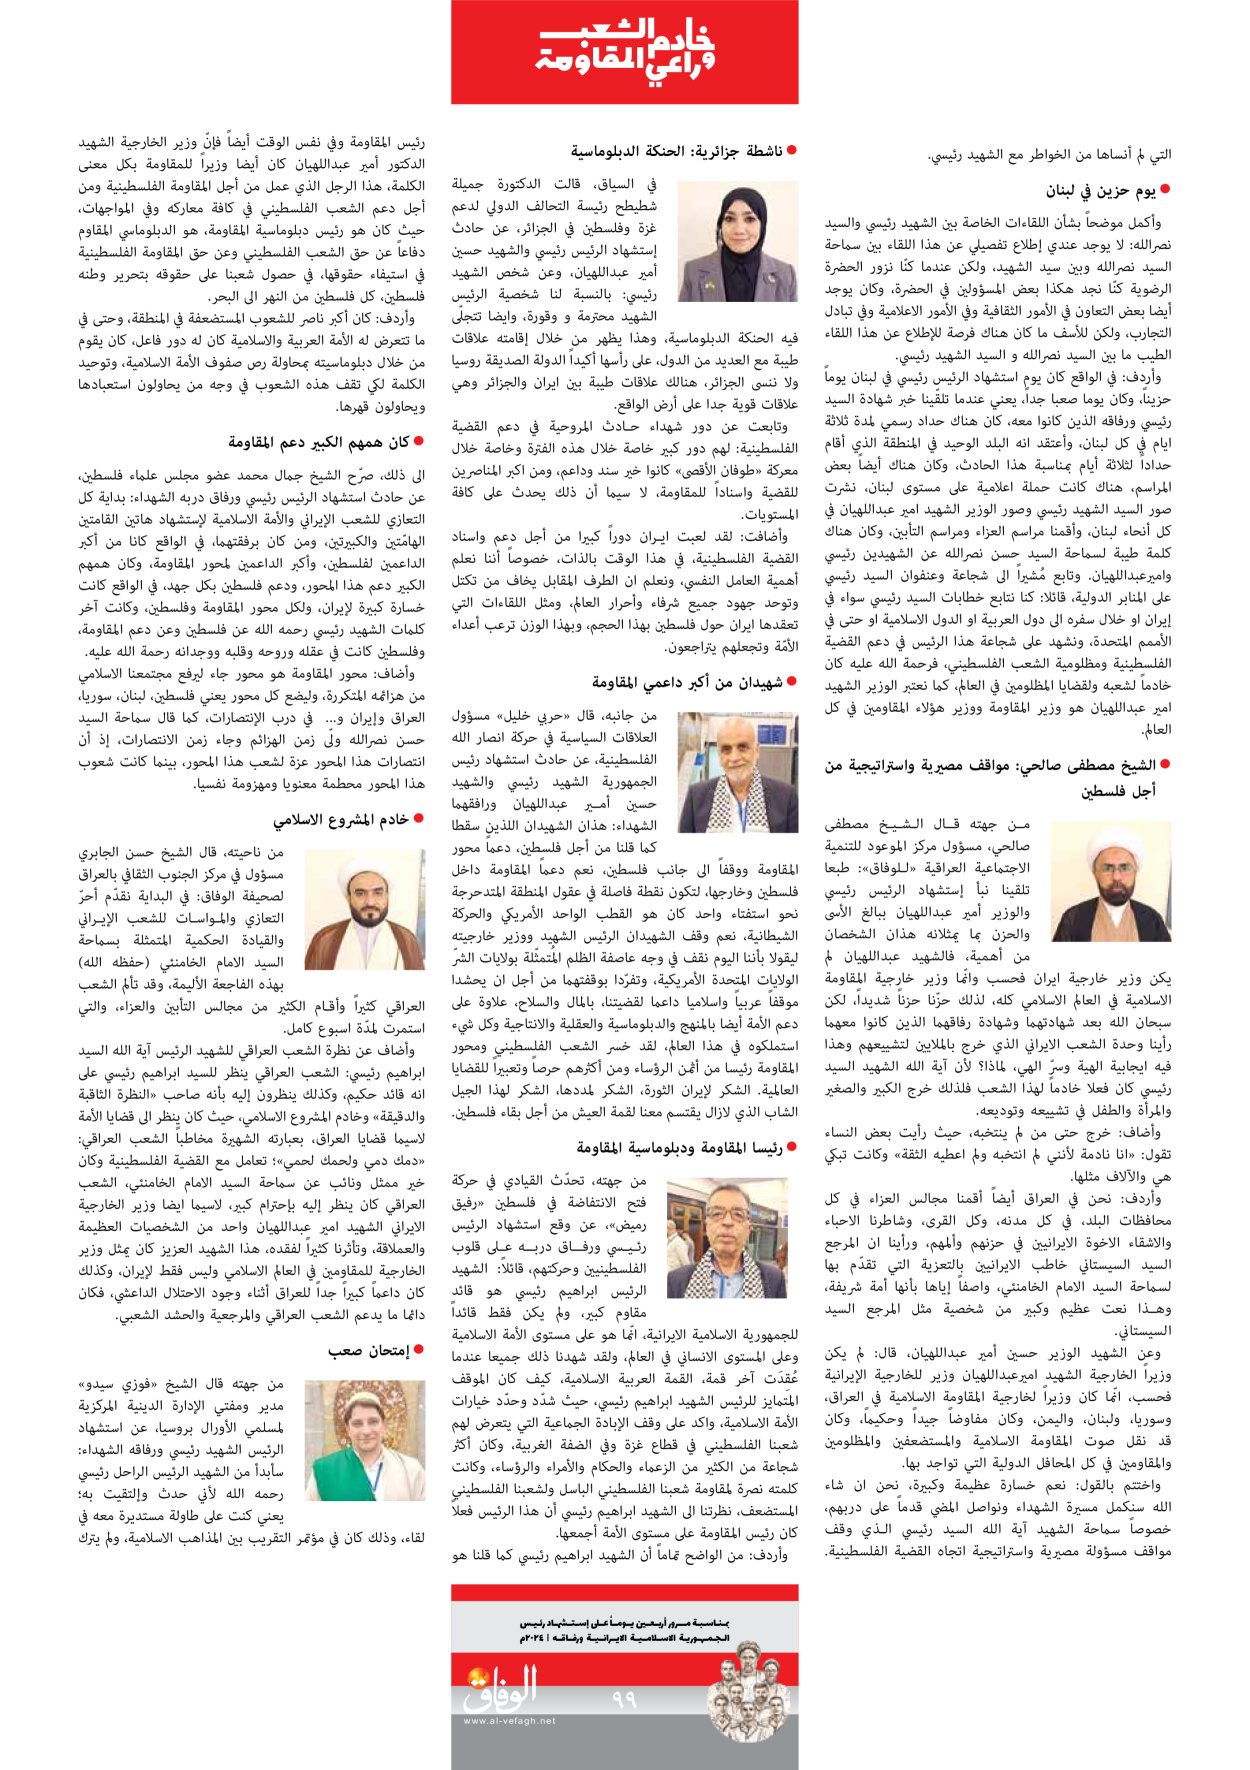 صحیفة ایران الدولیة الوفاق - ملحق ویژه نامه چهلم شهید رییسی - ٢٩ يونيو ٢٠٢٤ - الصفحة ۹۸